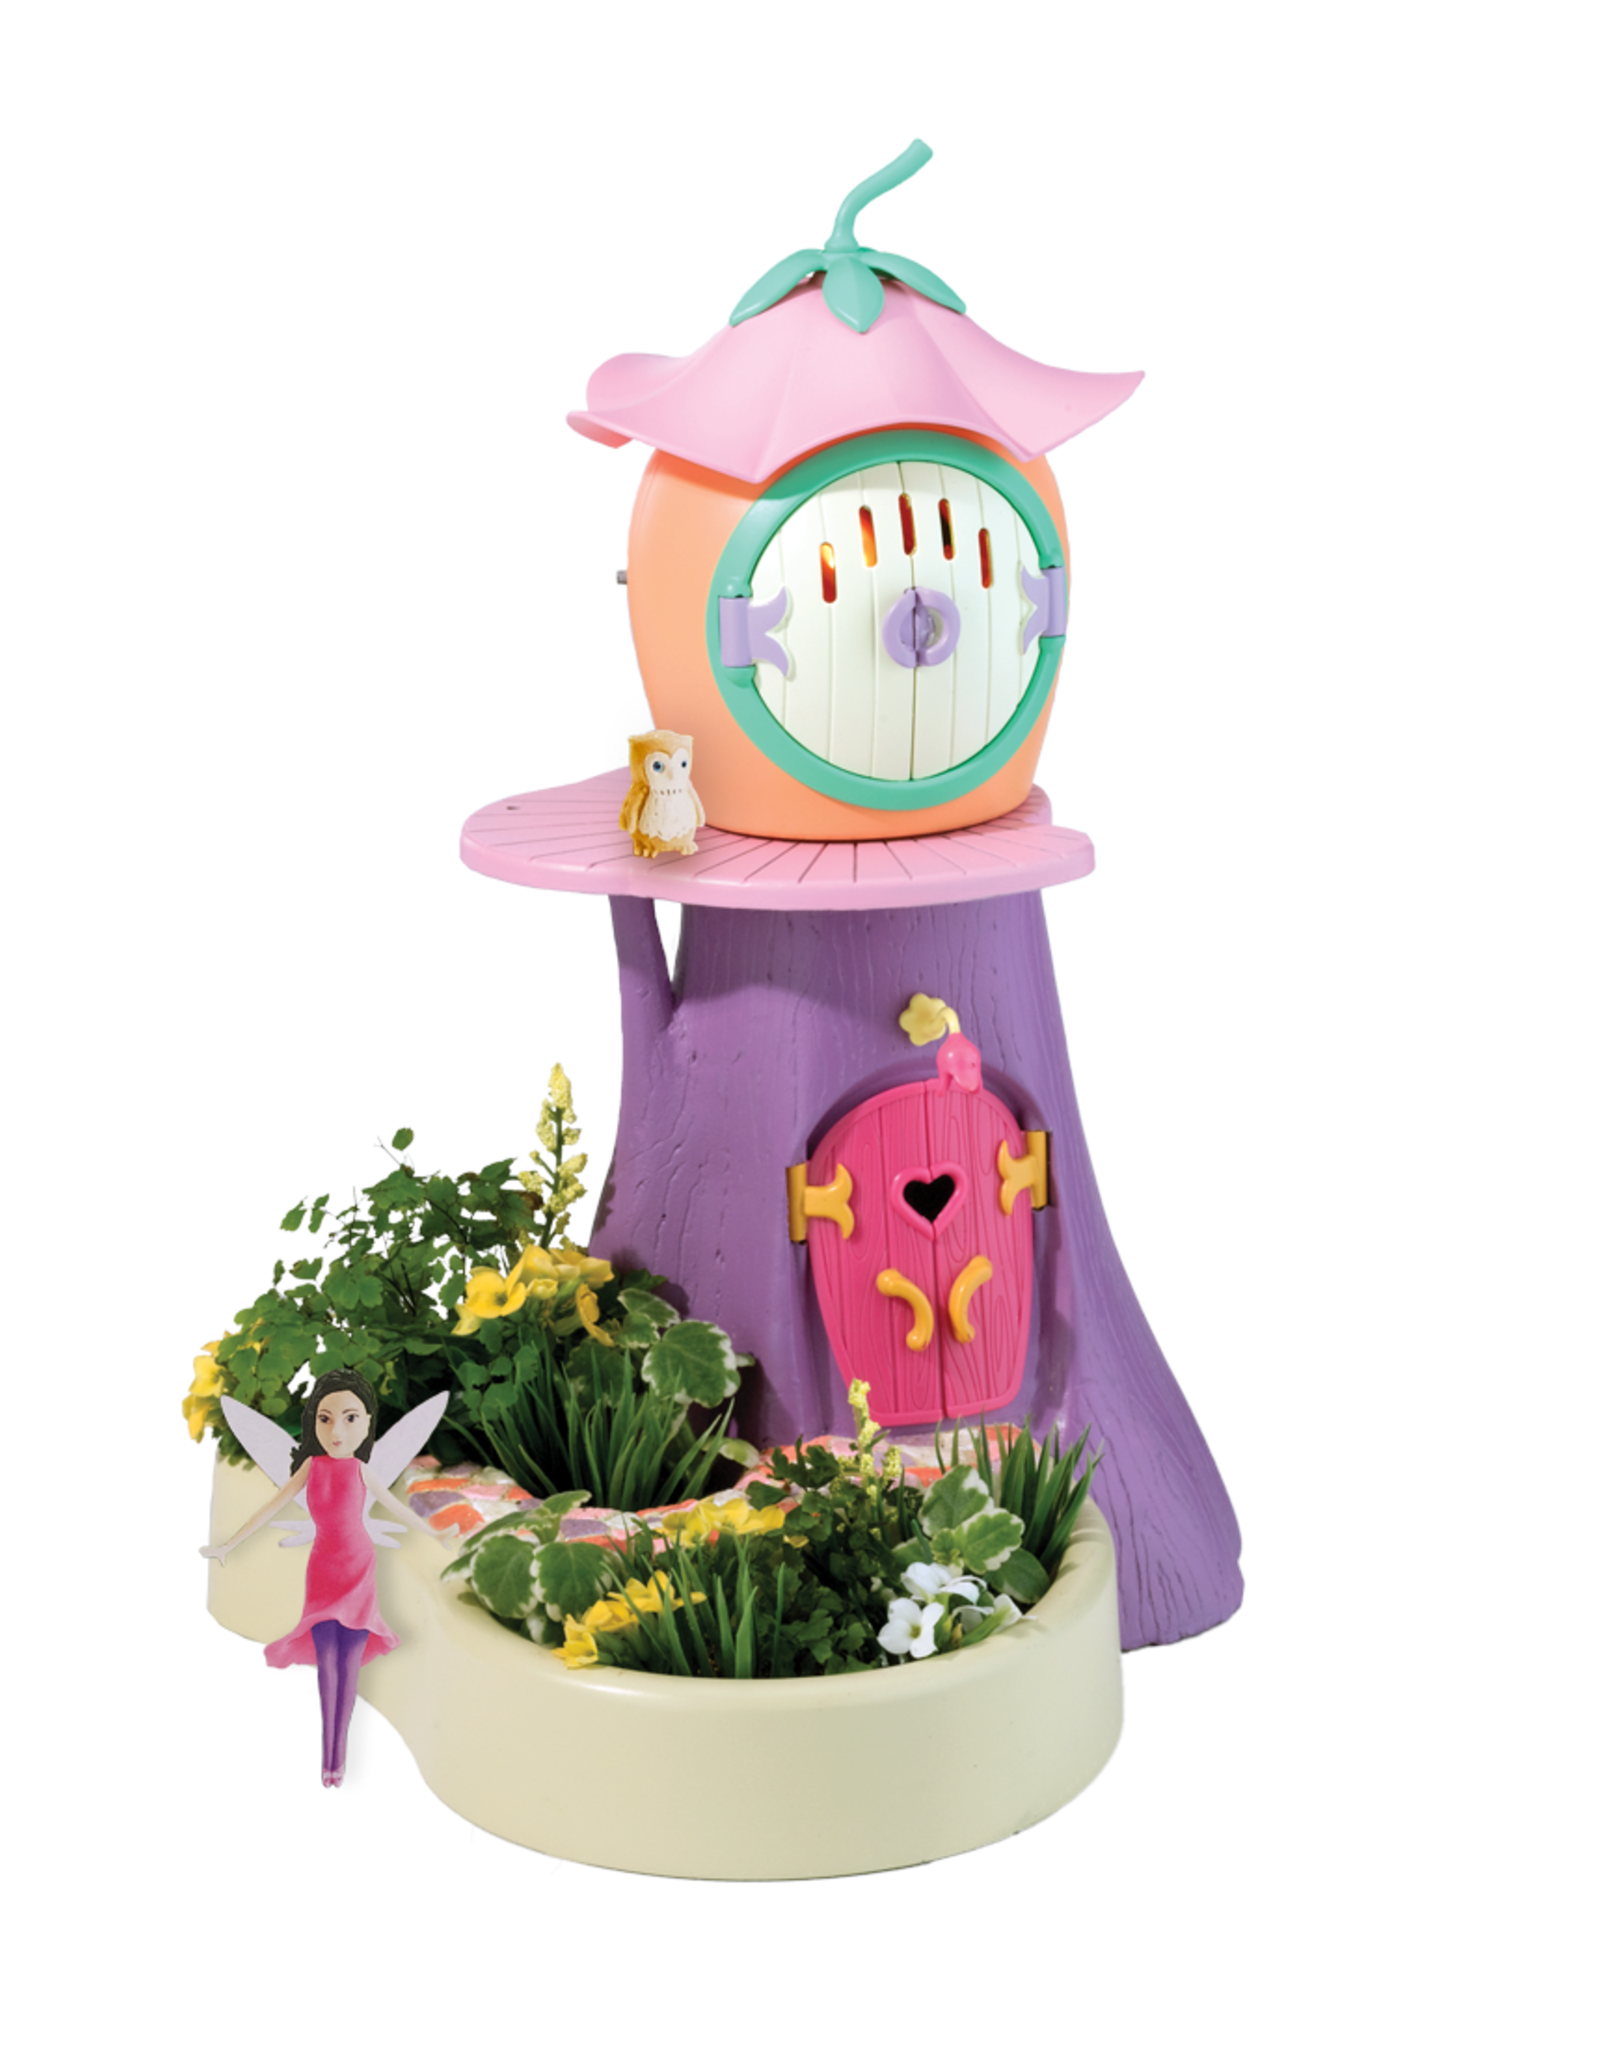 Play Monster Playmonster - My Fairy Garden - Light Treehouse